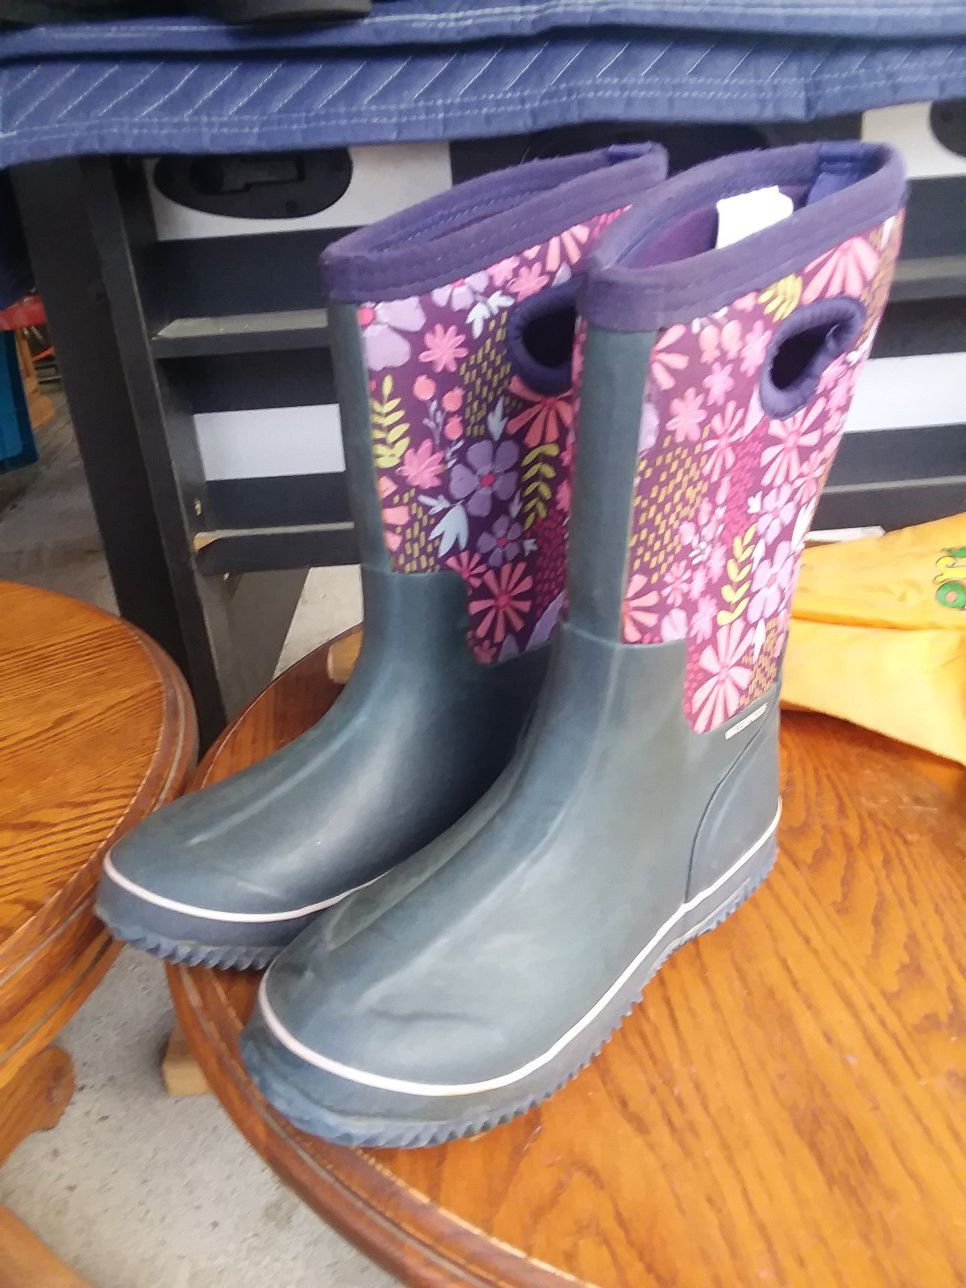 Girls rain boots